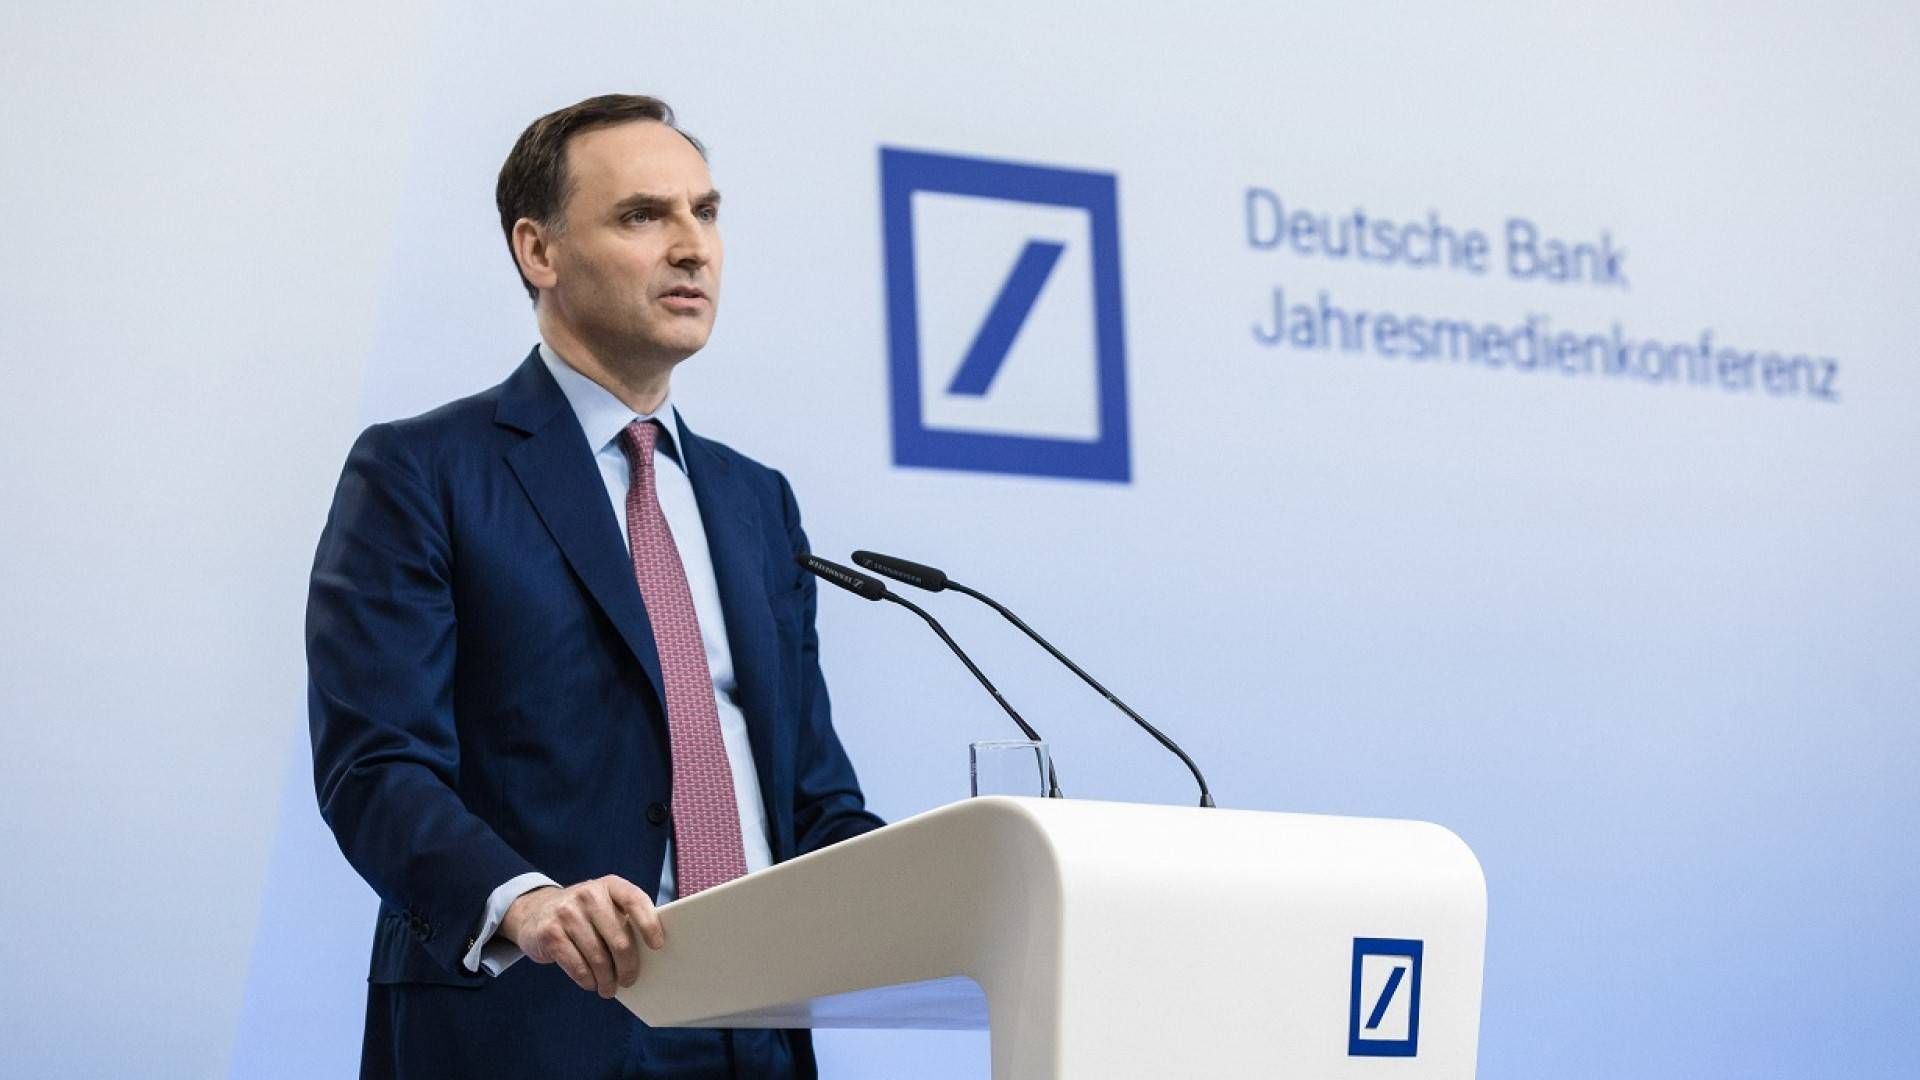 James-von-Moltke, Finanzvorstand, Deutsche Bank | Foto: Deutsche Bank